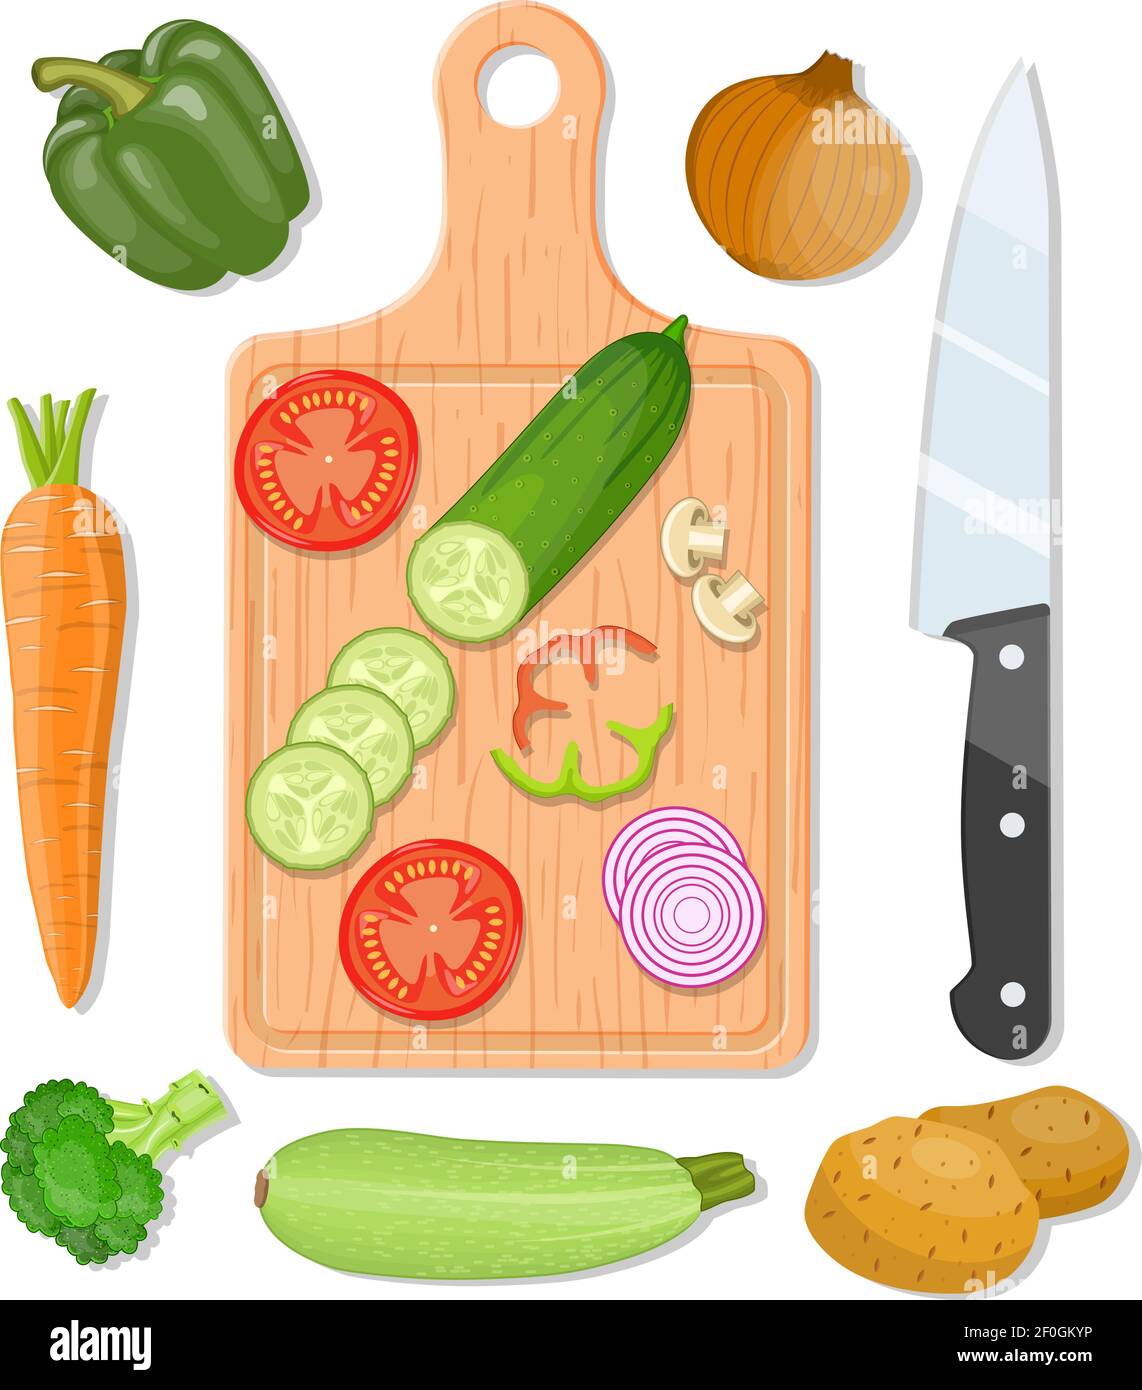 https://c8.alamy.com/compes/2f0gkyp/tabla-de-cortar-y-verduras-2f0gkyp.jpg